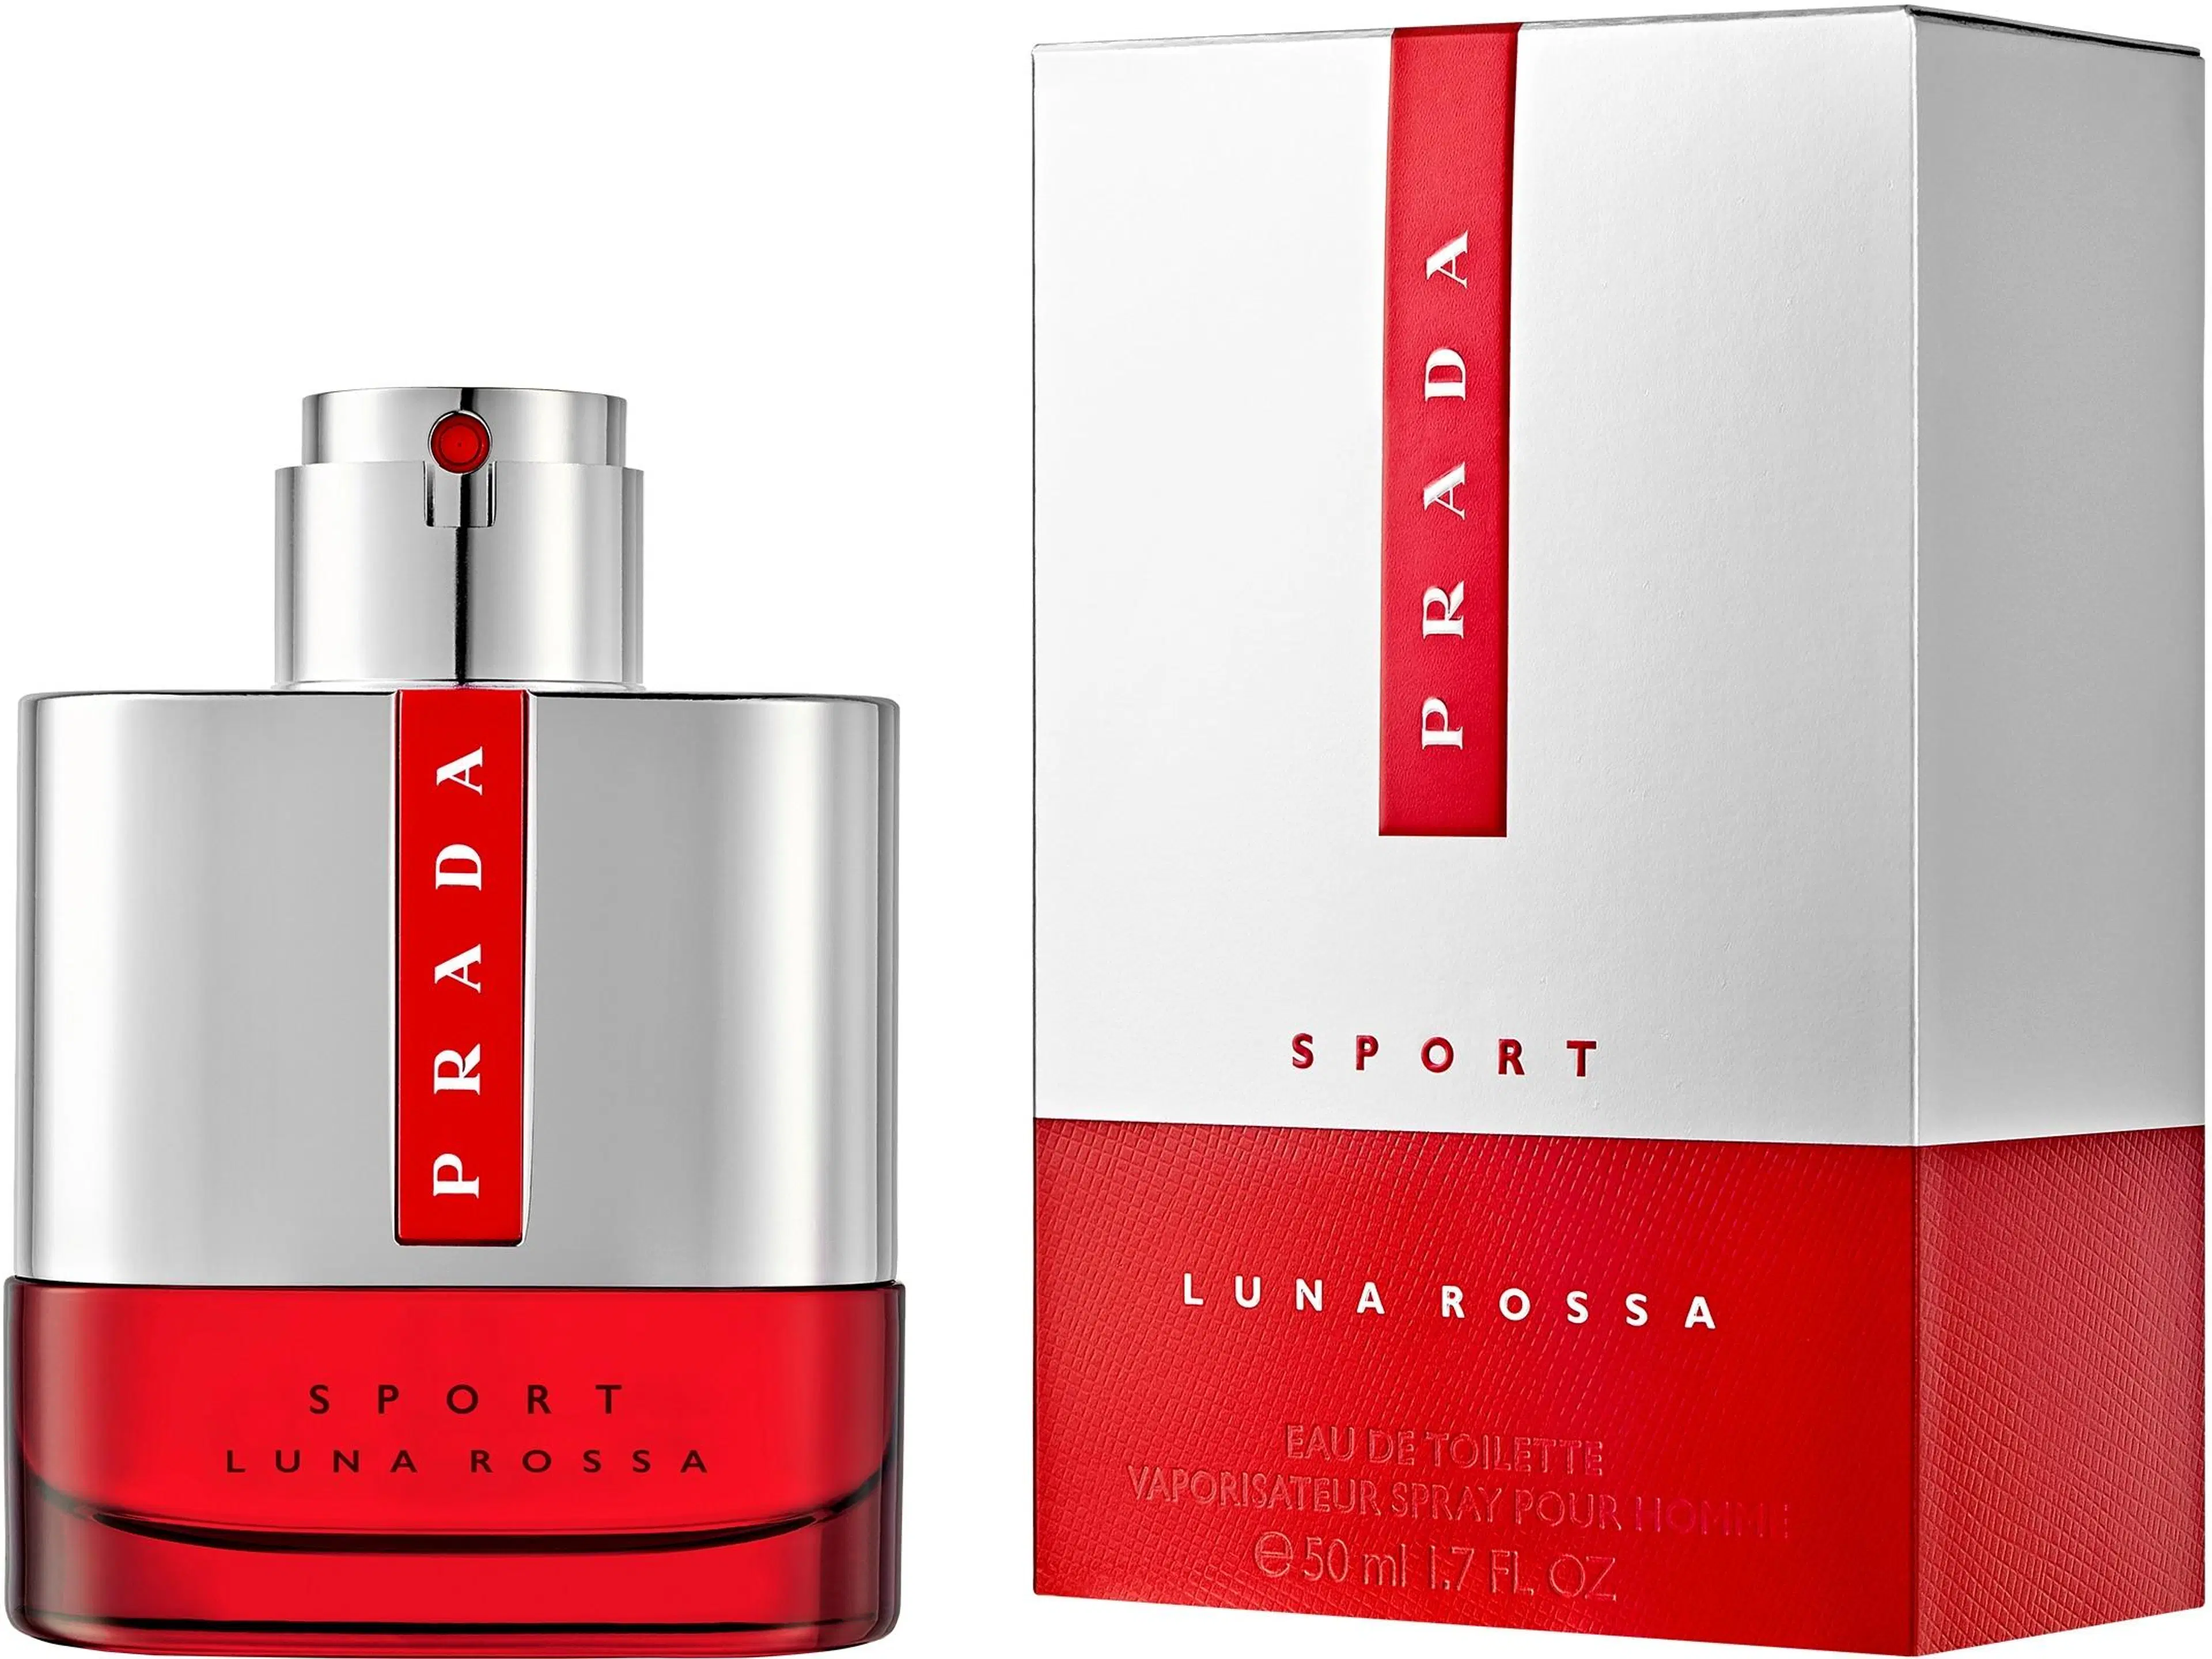 Prada Luna Rossa Sport EdT tuoksu 50 ml